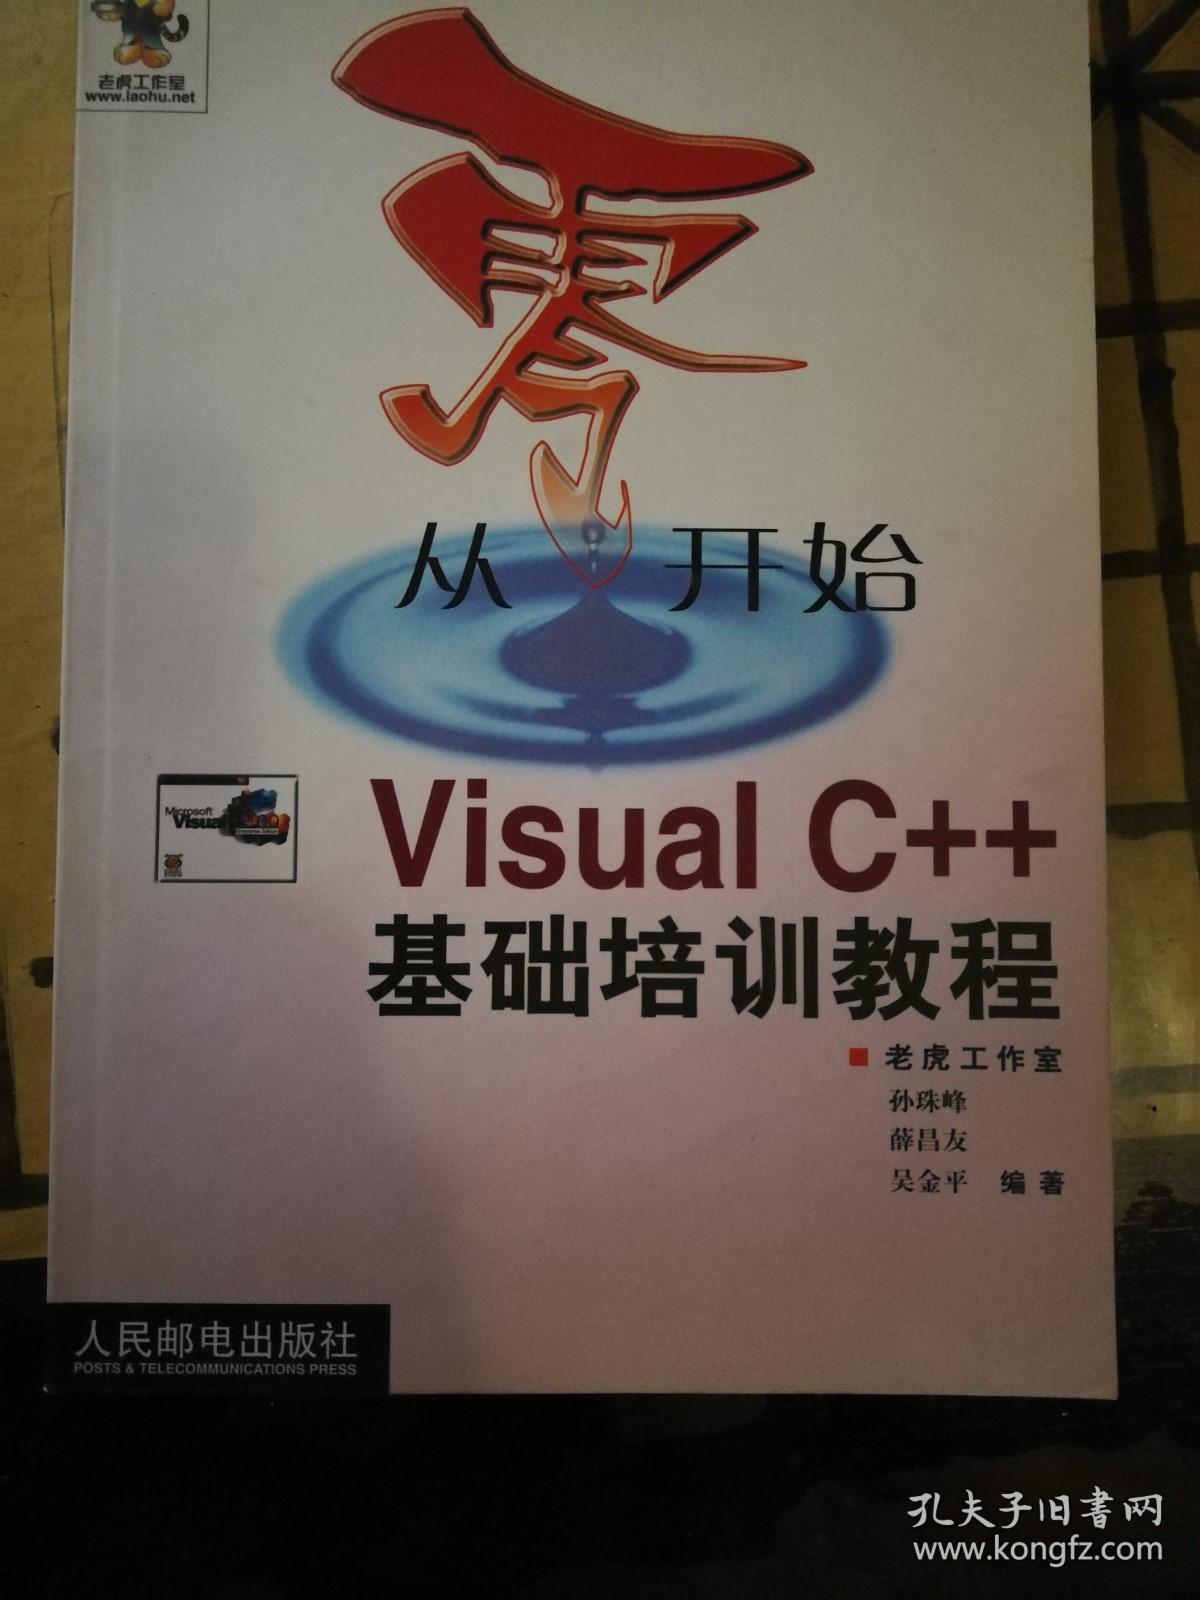 从零开始VISUA1 C++基础培训教程